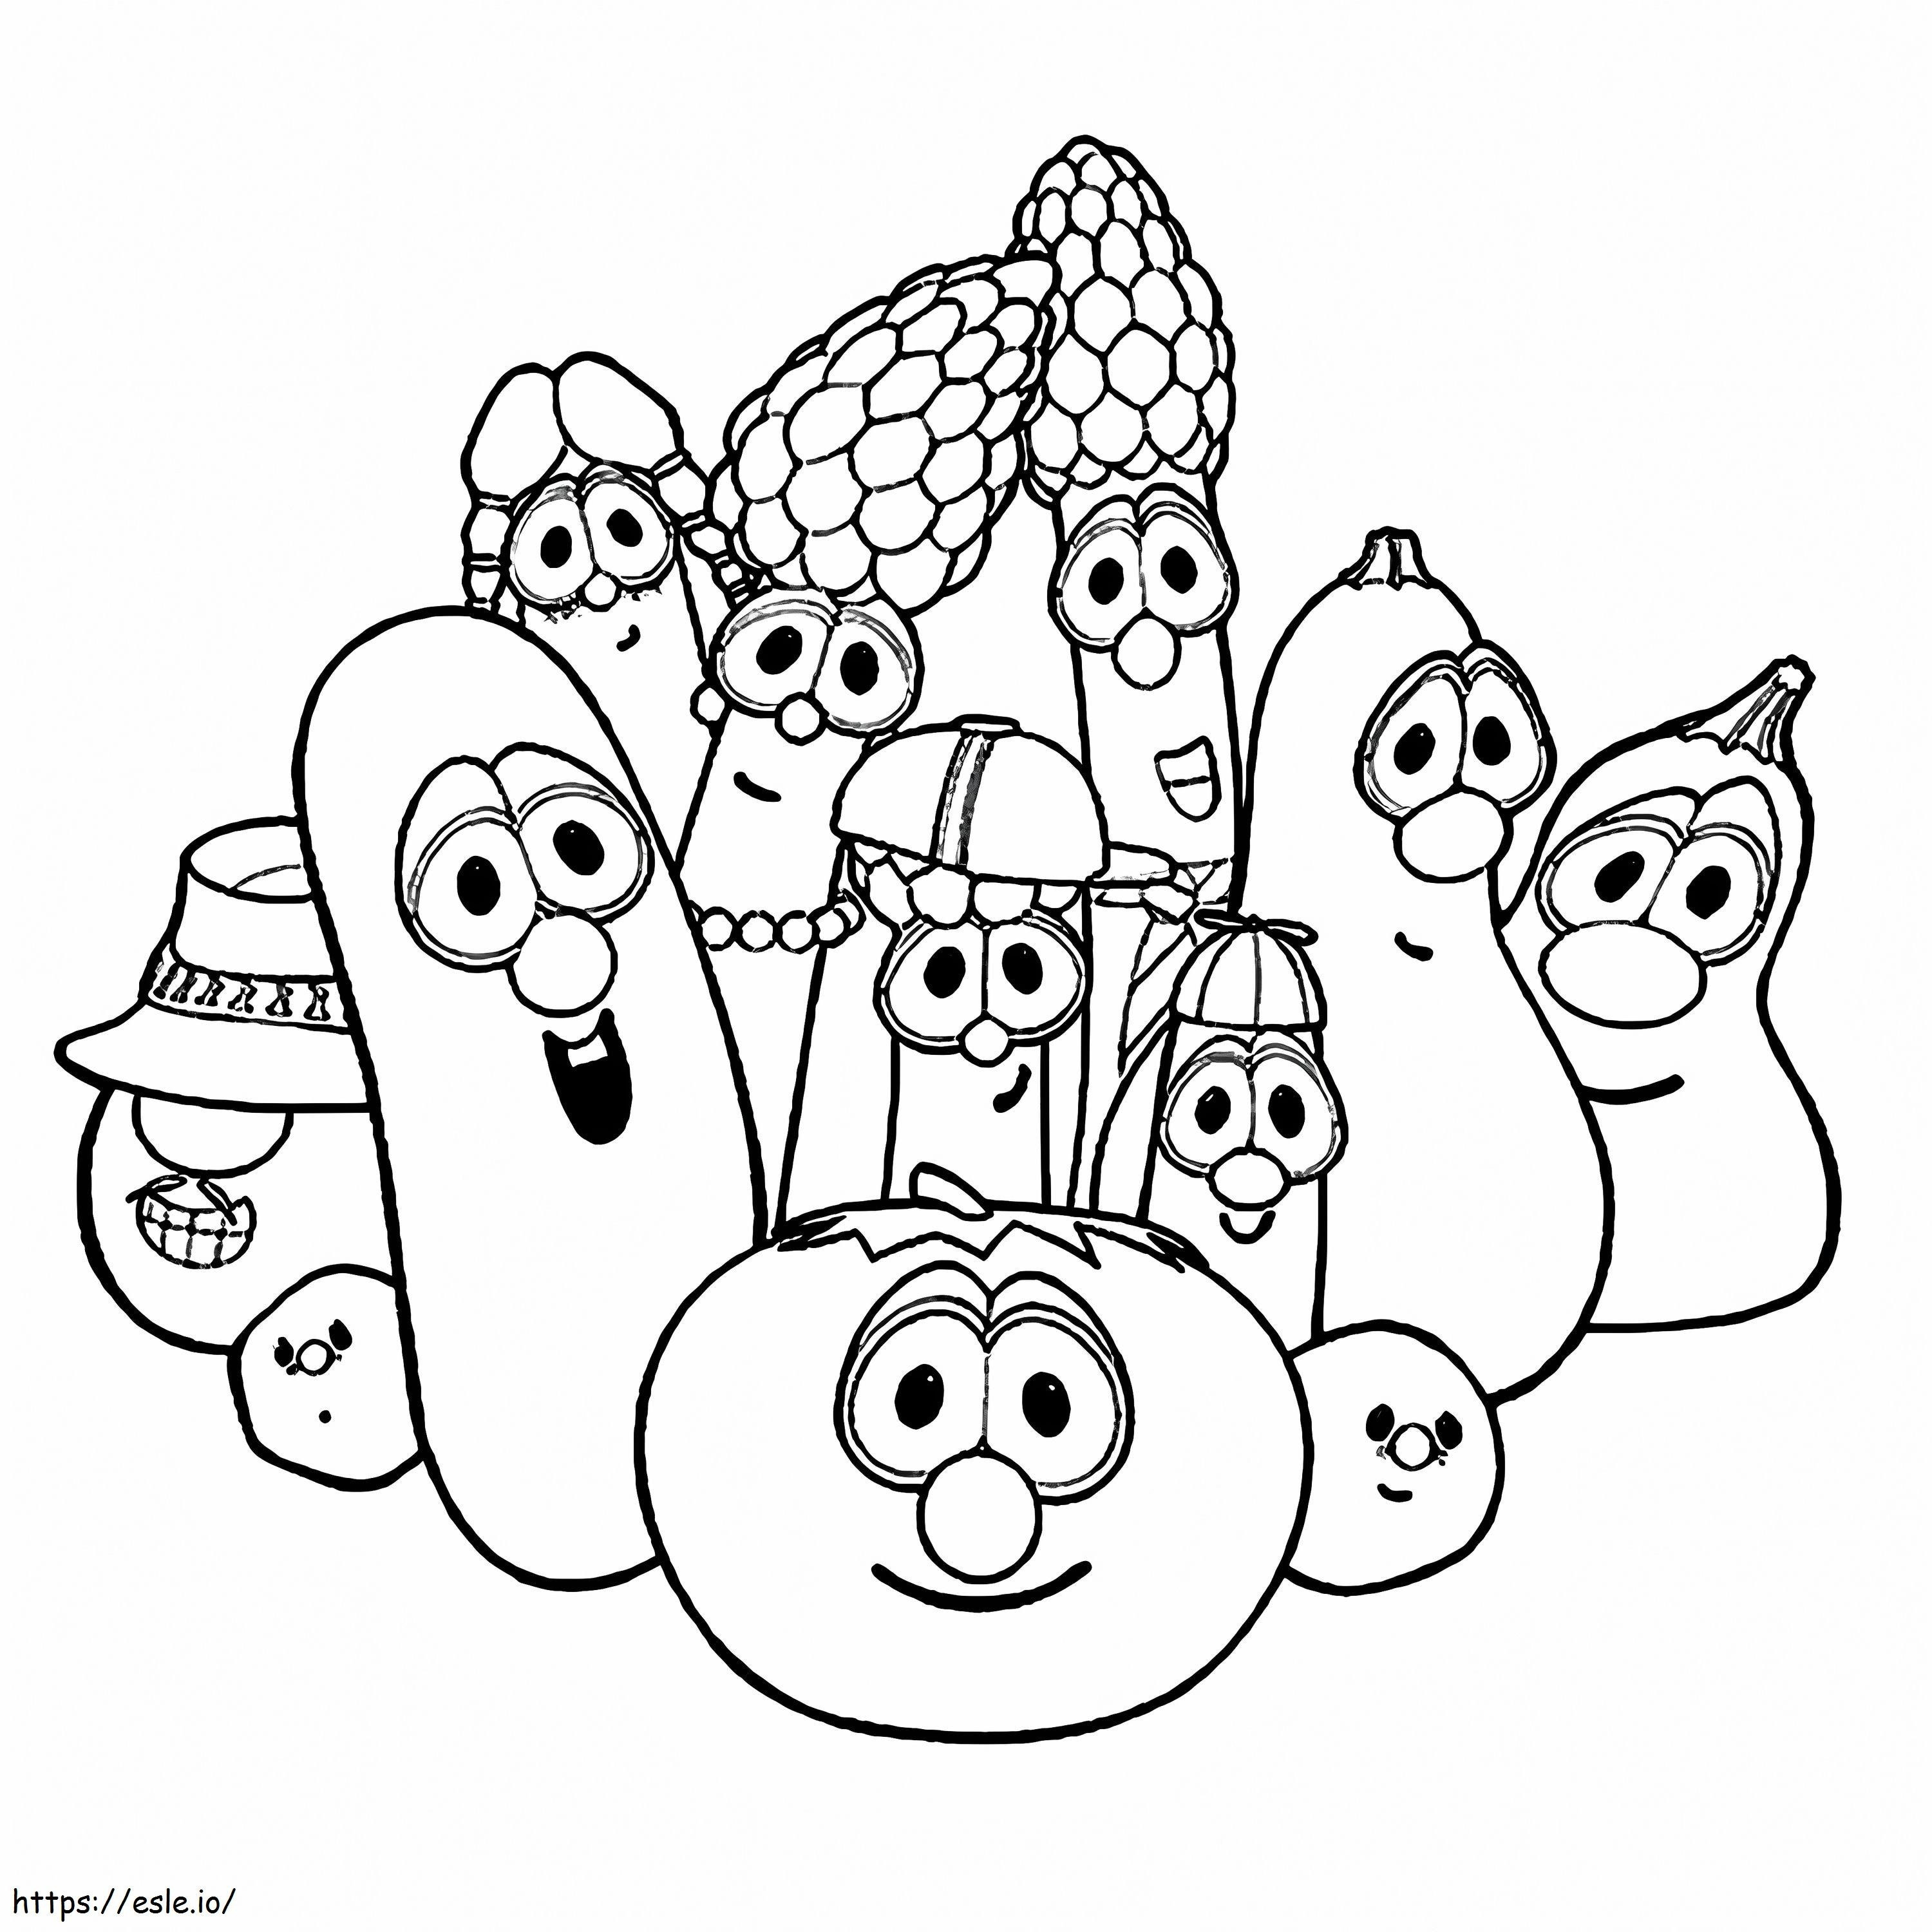 1543802274 Cartoon-Gemüse ausmalbilder